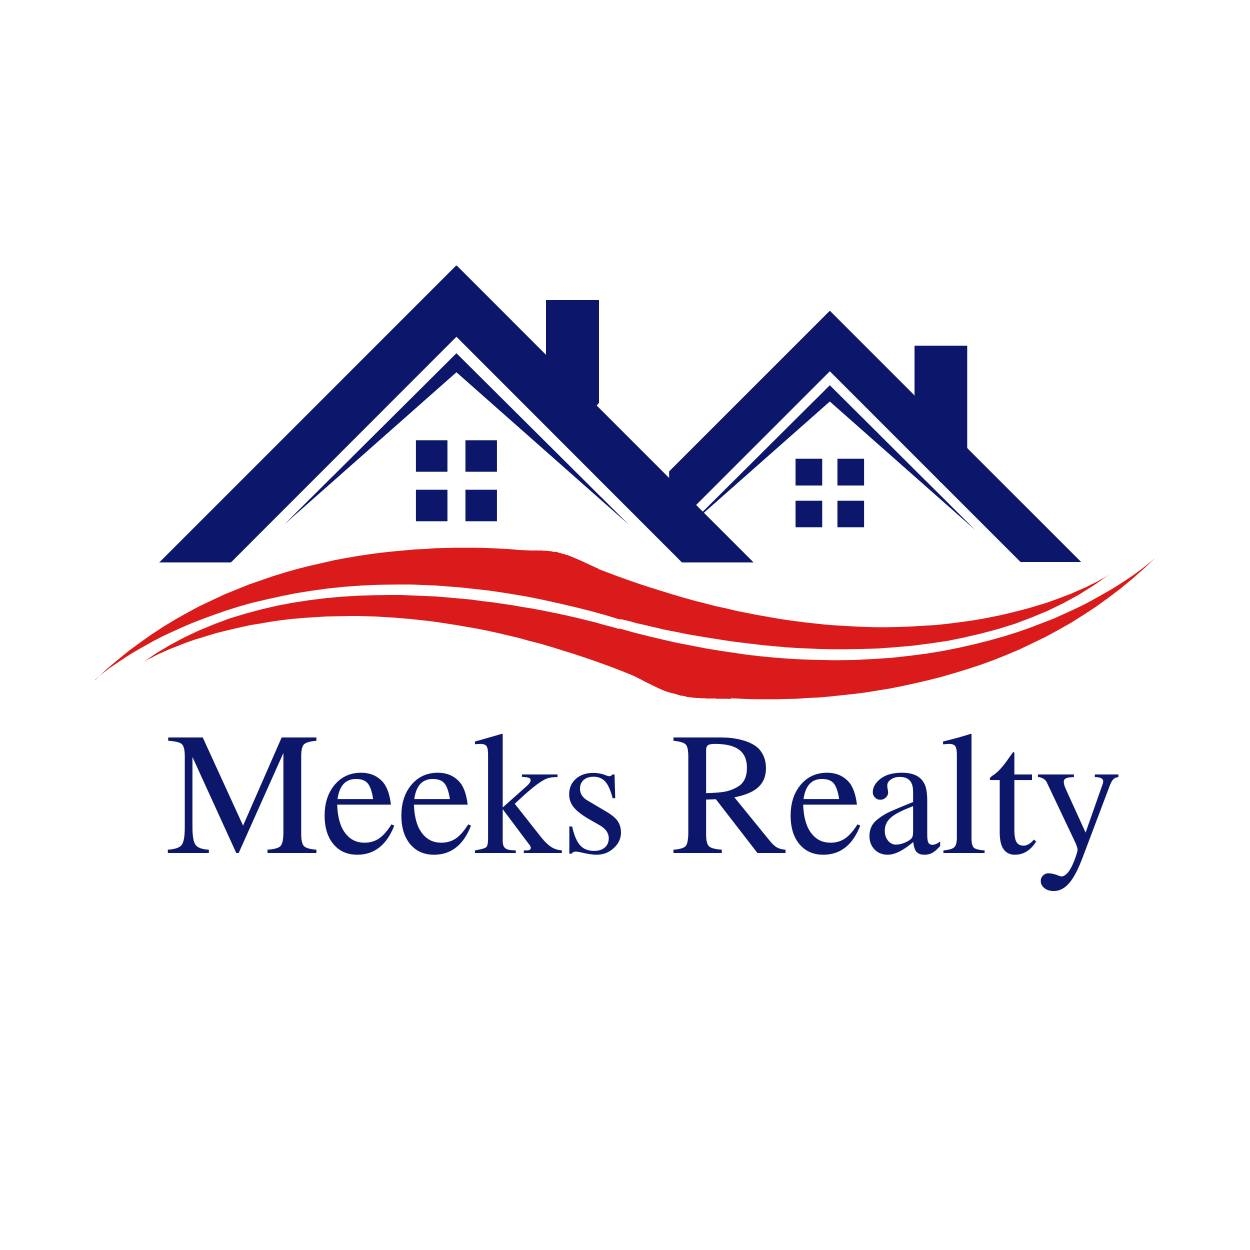 meeks realty logo image